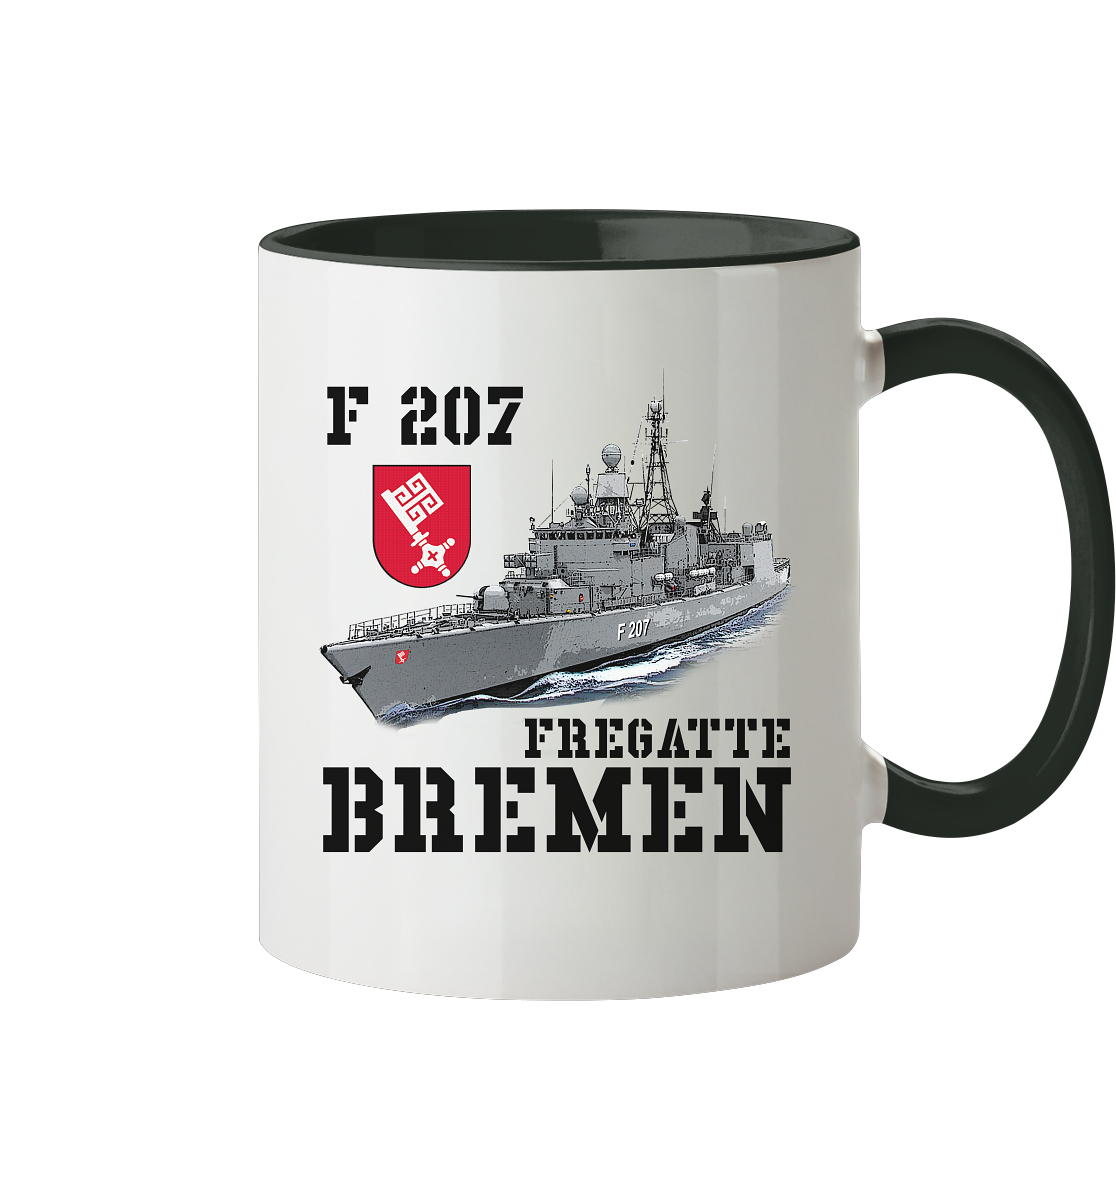 F207 Fregatte BREMEN - Tasse zweifarbig